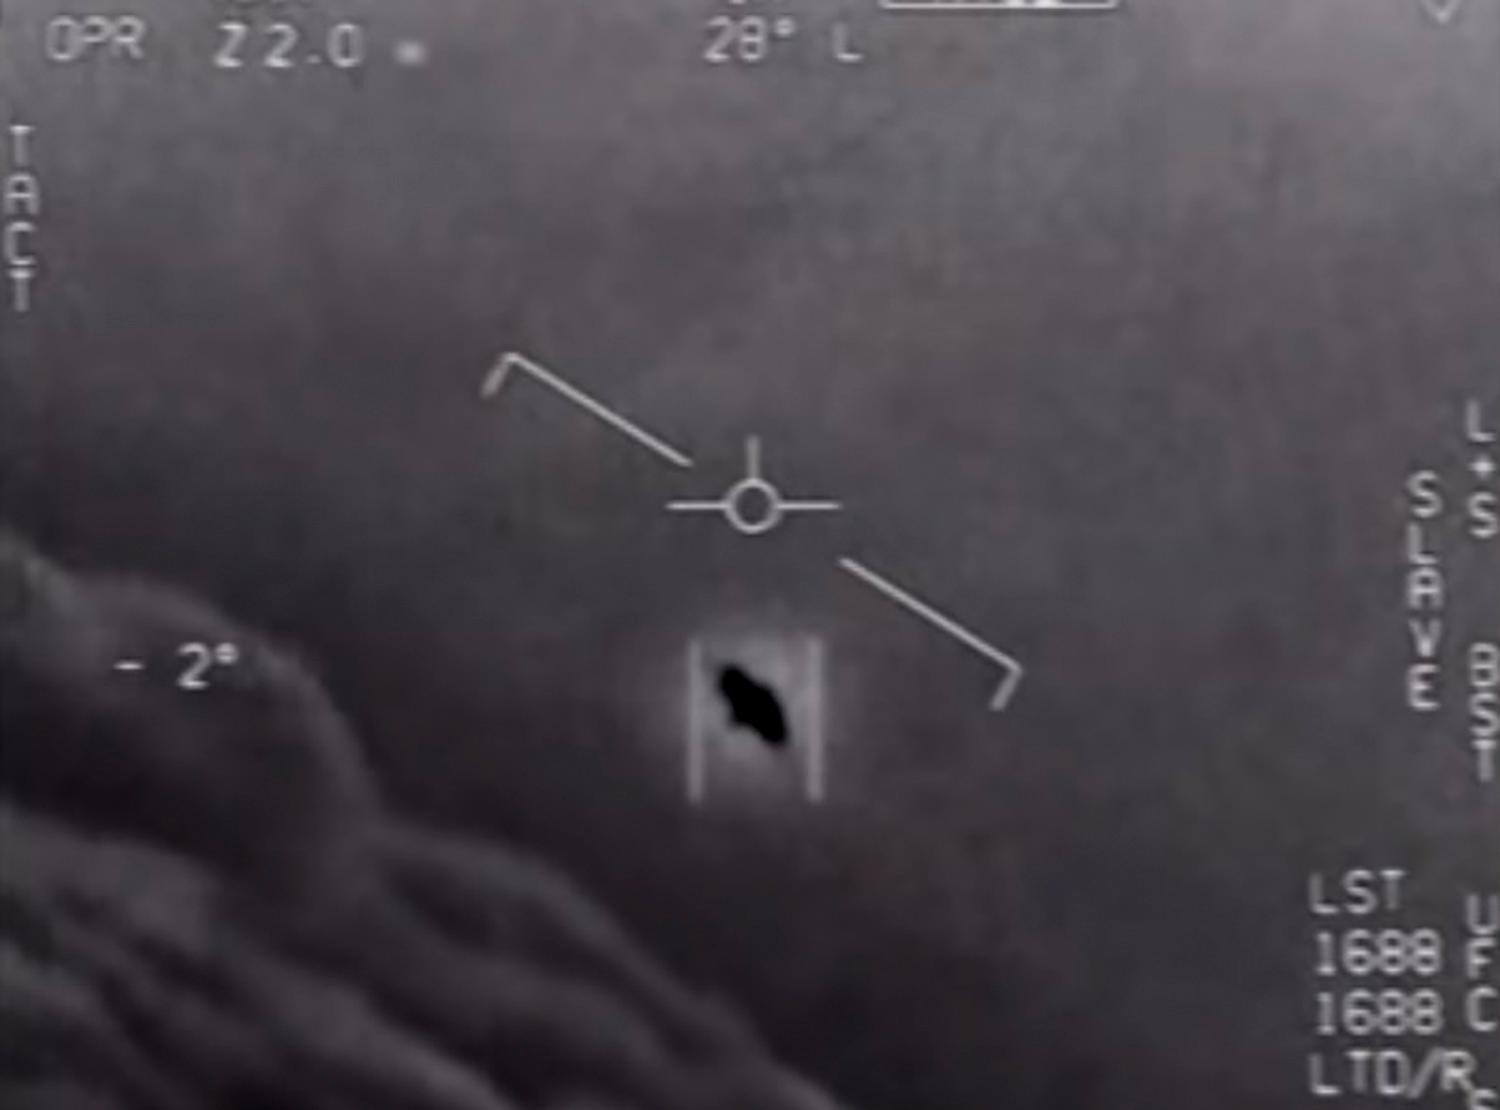 Den här bilden från amerikanska marinen, tagen 2020, har lett till mycket spekulation och påstås av vissa visa ett ufo.